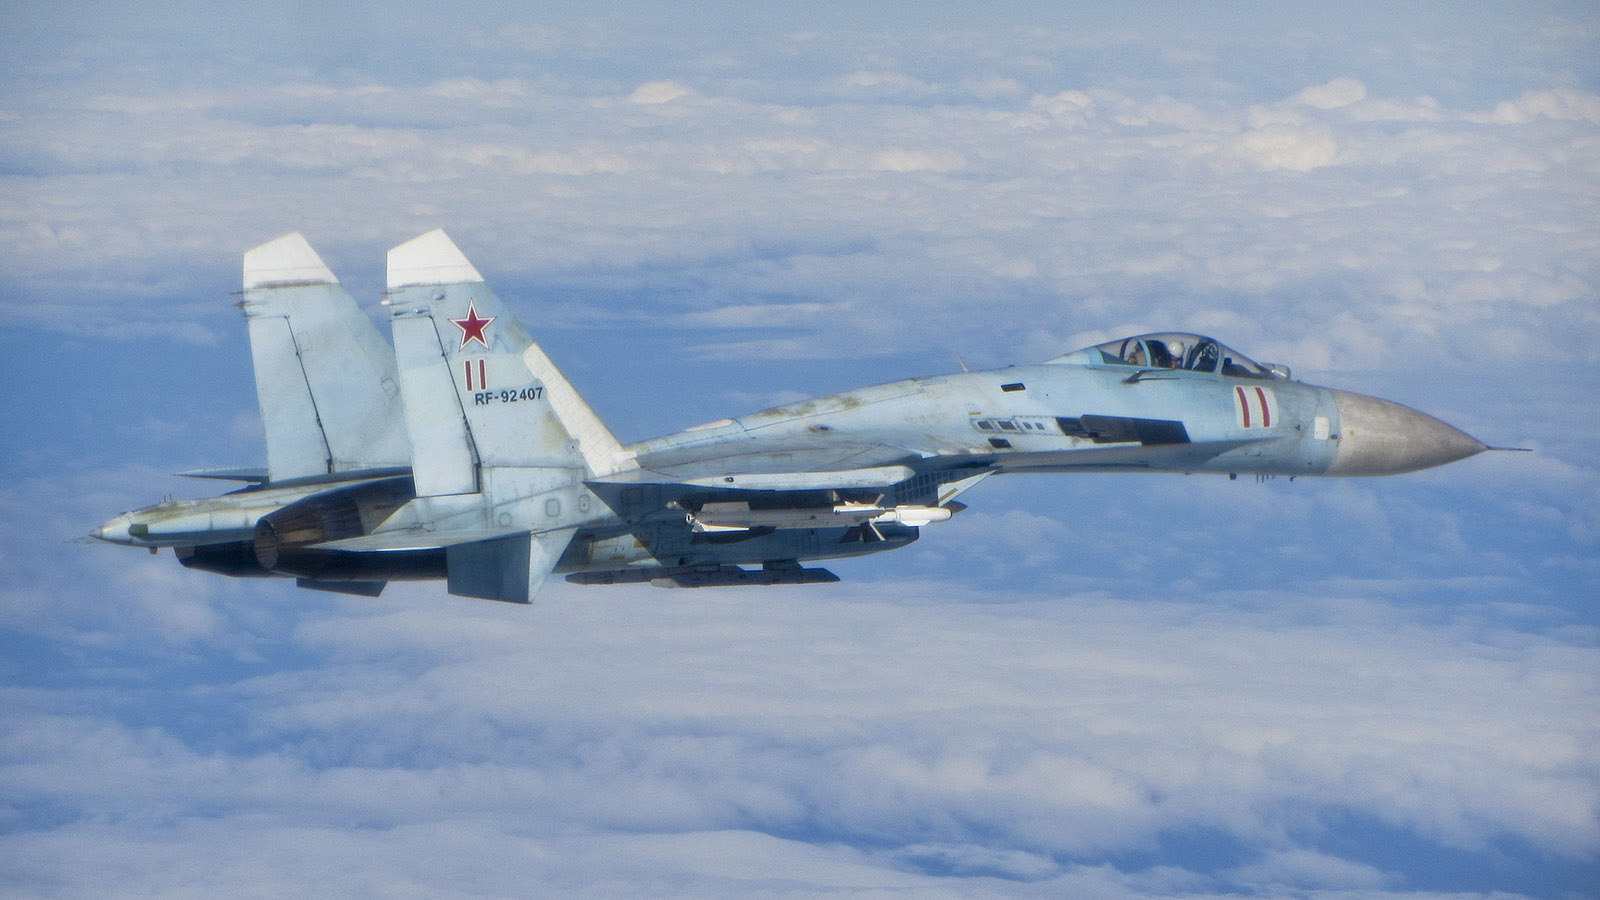 Μαύρη Θάλασσα: Ρωσικό μαχητικό Su-27 αναχαίτισε αμερικανικό αναγνωριστικό